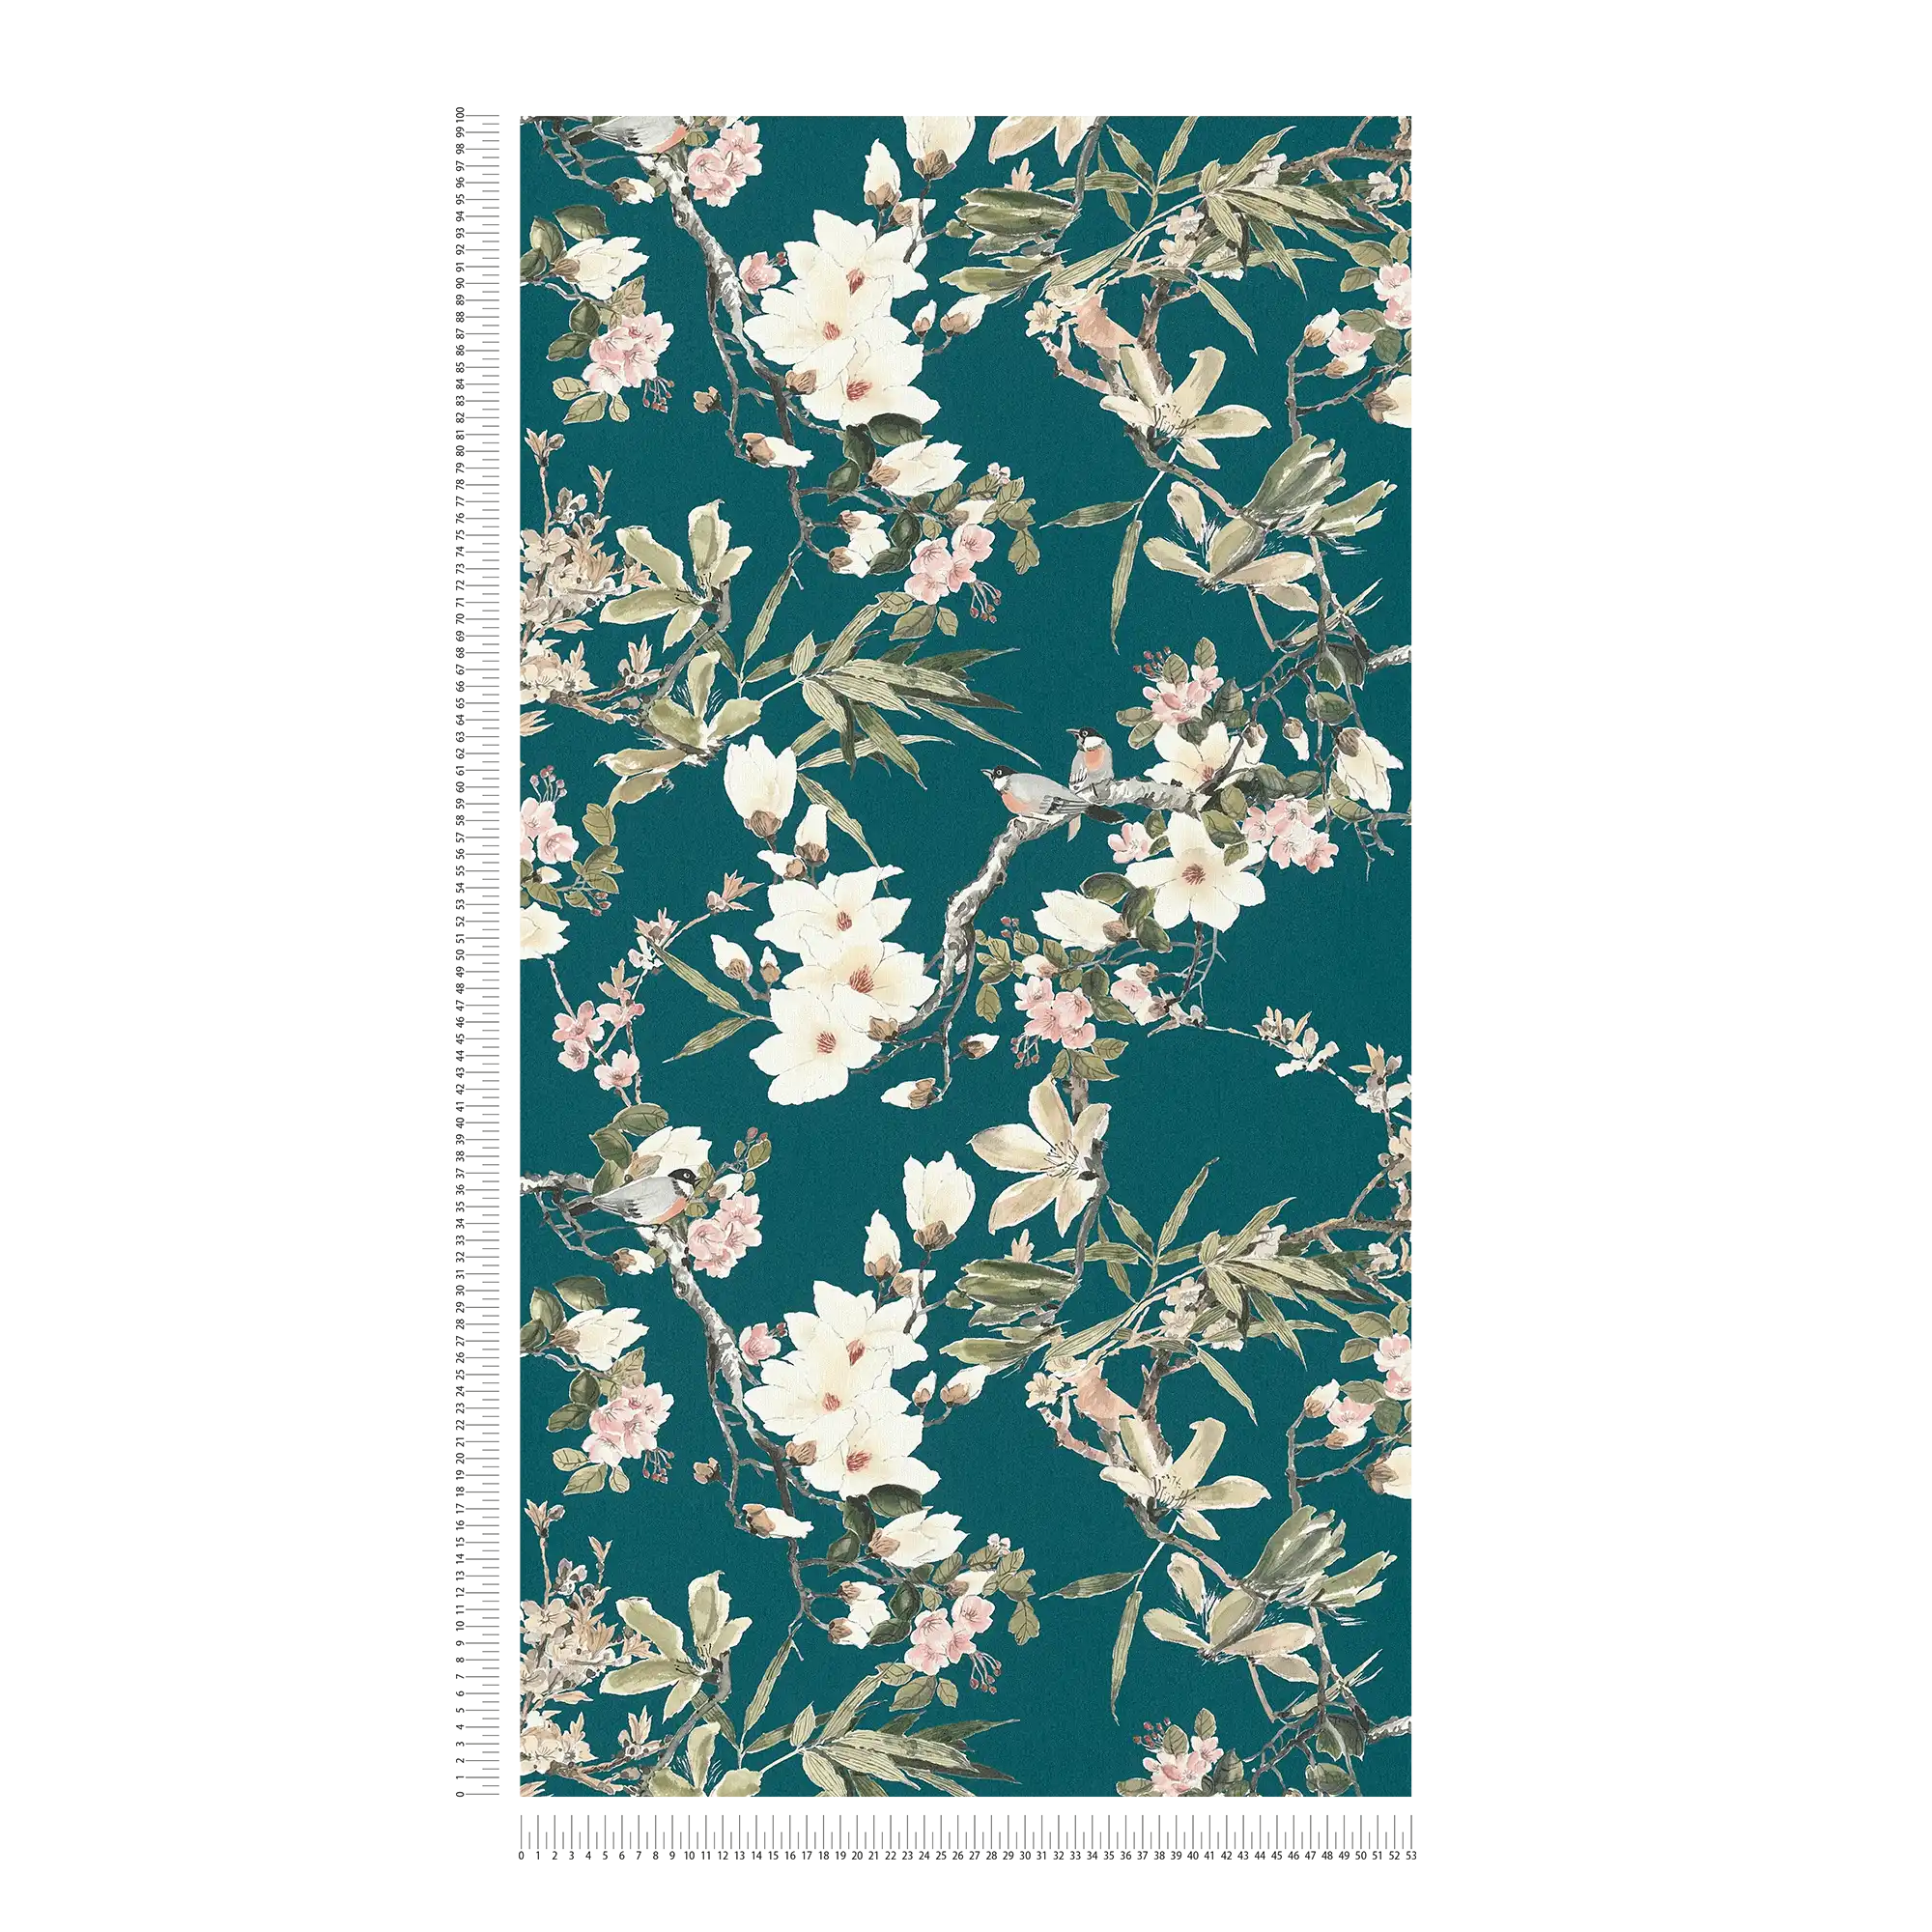             Papier peint intissé Nature Design fleurs branches & oiseaux - bleu, vert
        